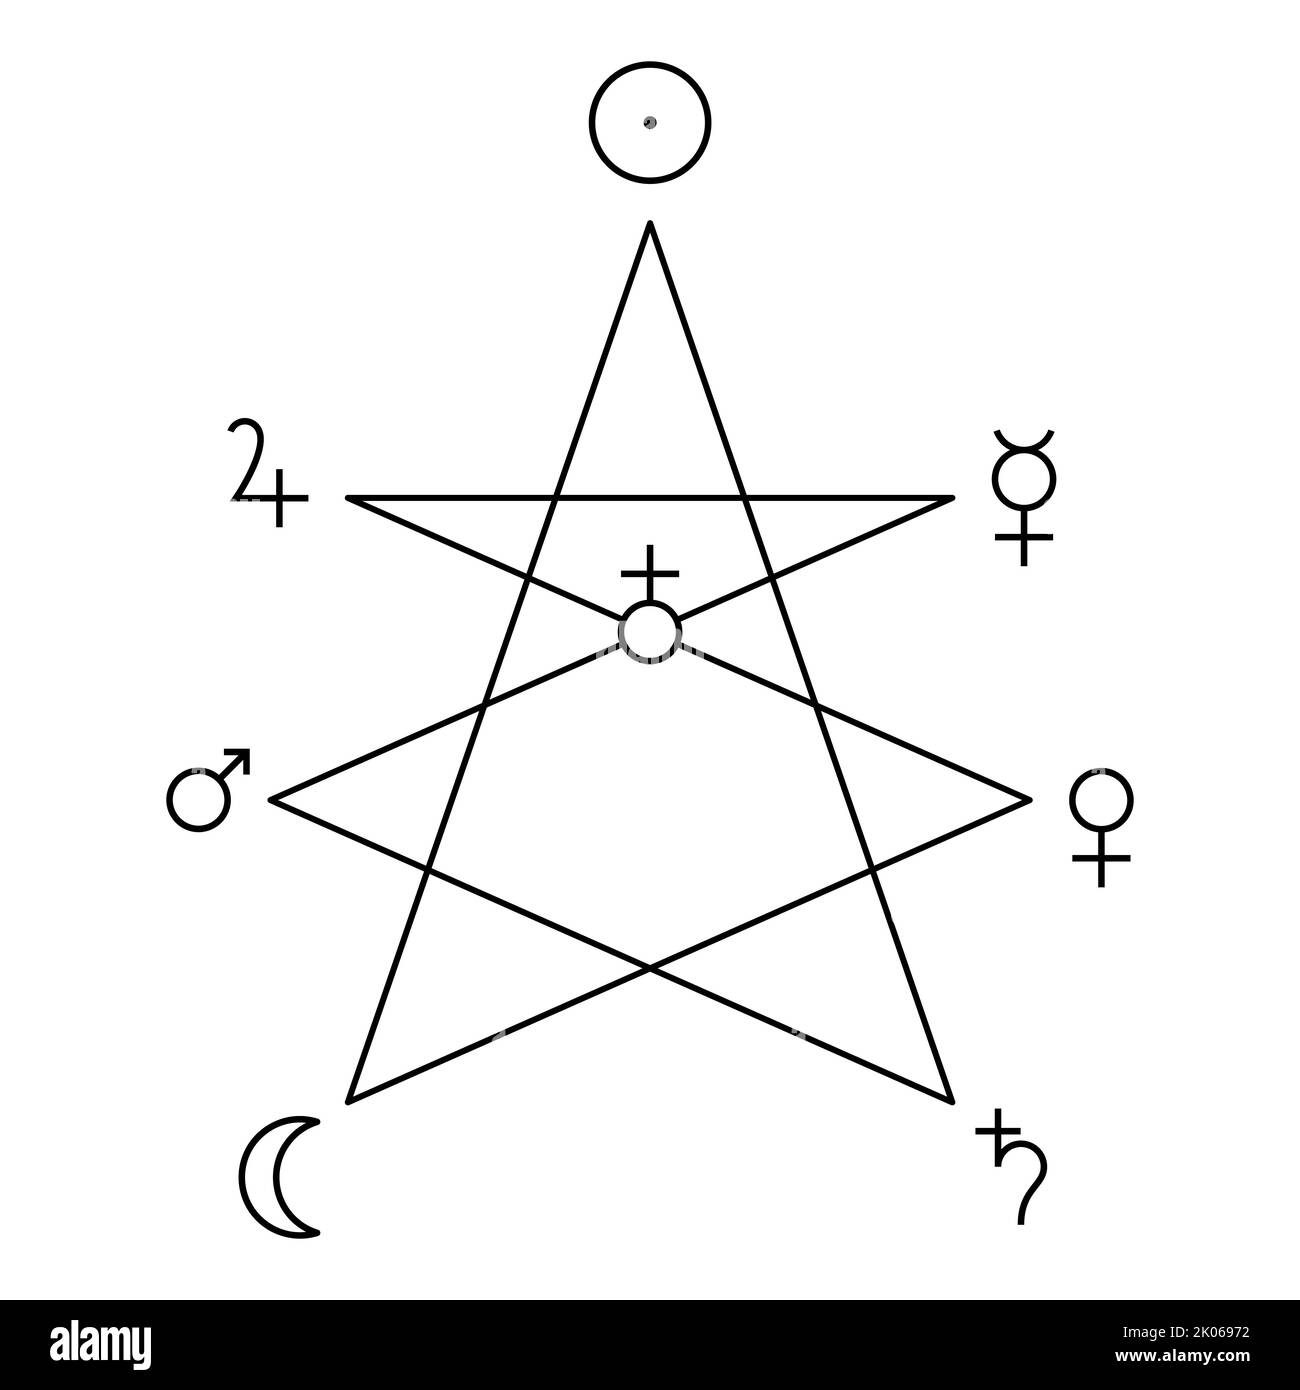 Símbolos de cordero místico, planetas y globus cruciger. Estrella de siete puntas unicursal que refleja el sacrificio divino de Cristo a la humanidad. Foto de stock